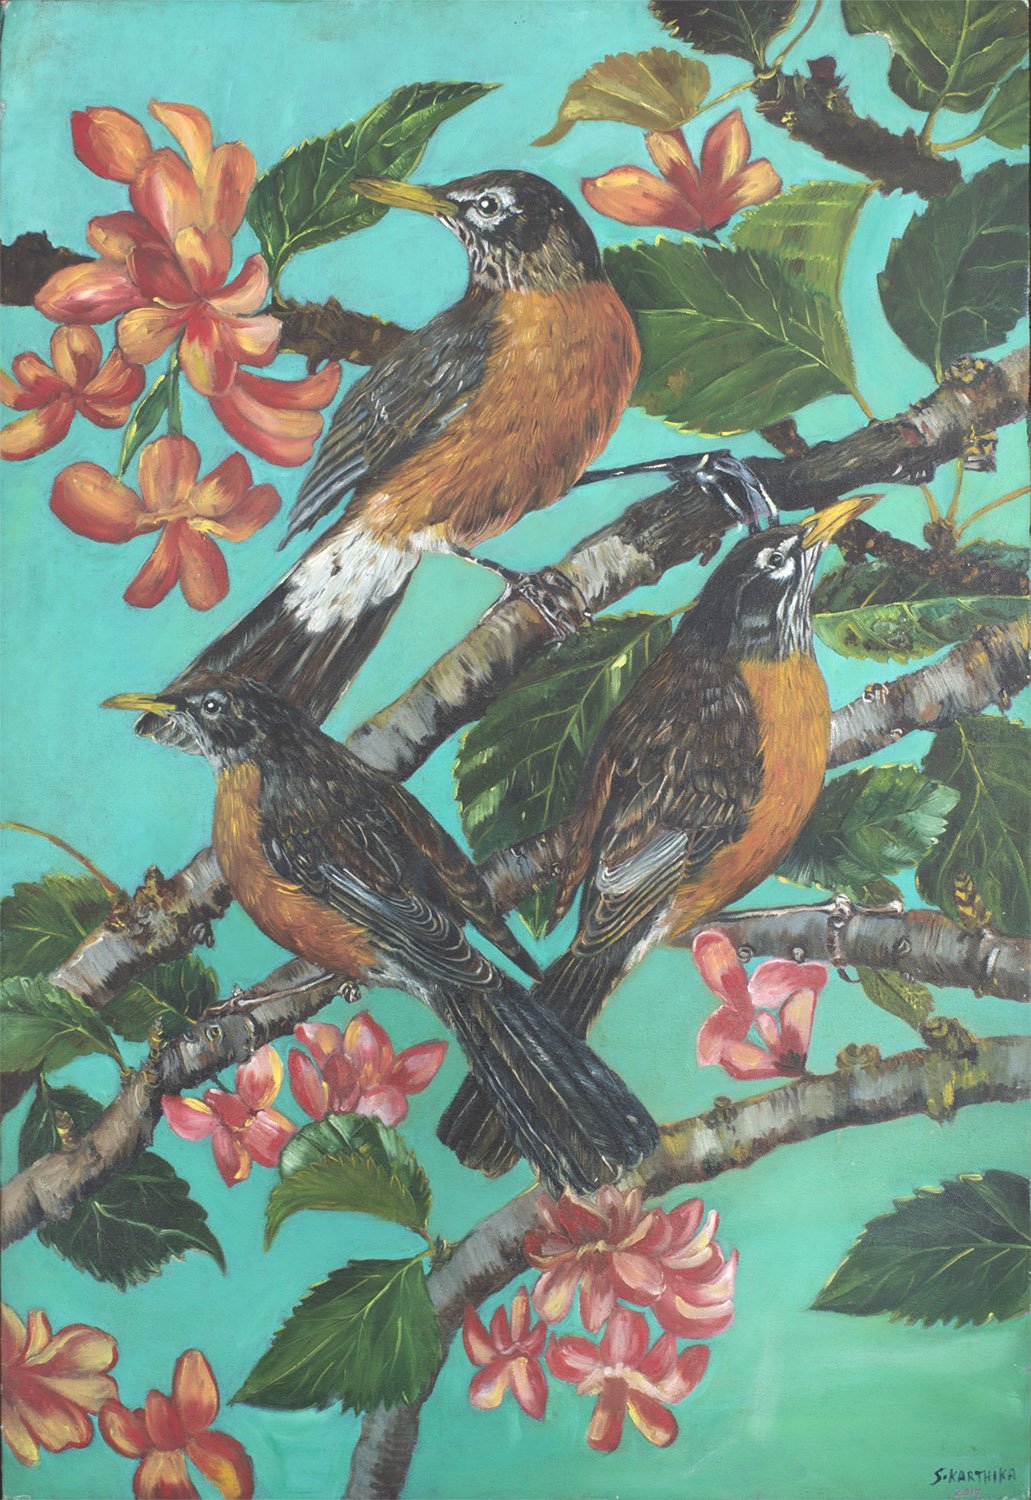 Bird Series 1|S. Karthika- Oil on Canvas, 2018, 36 x 24 inches